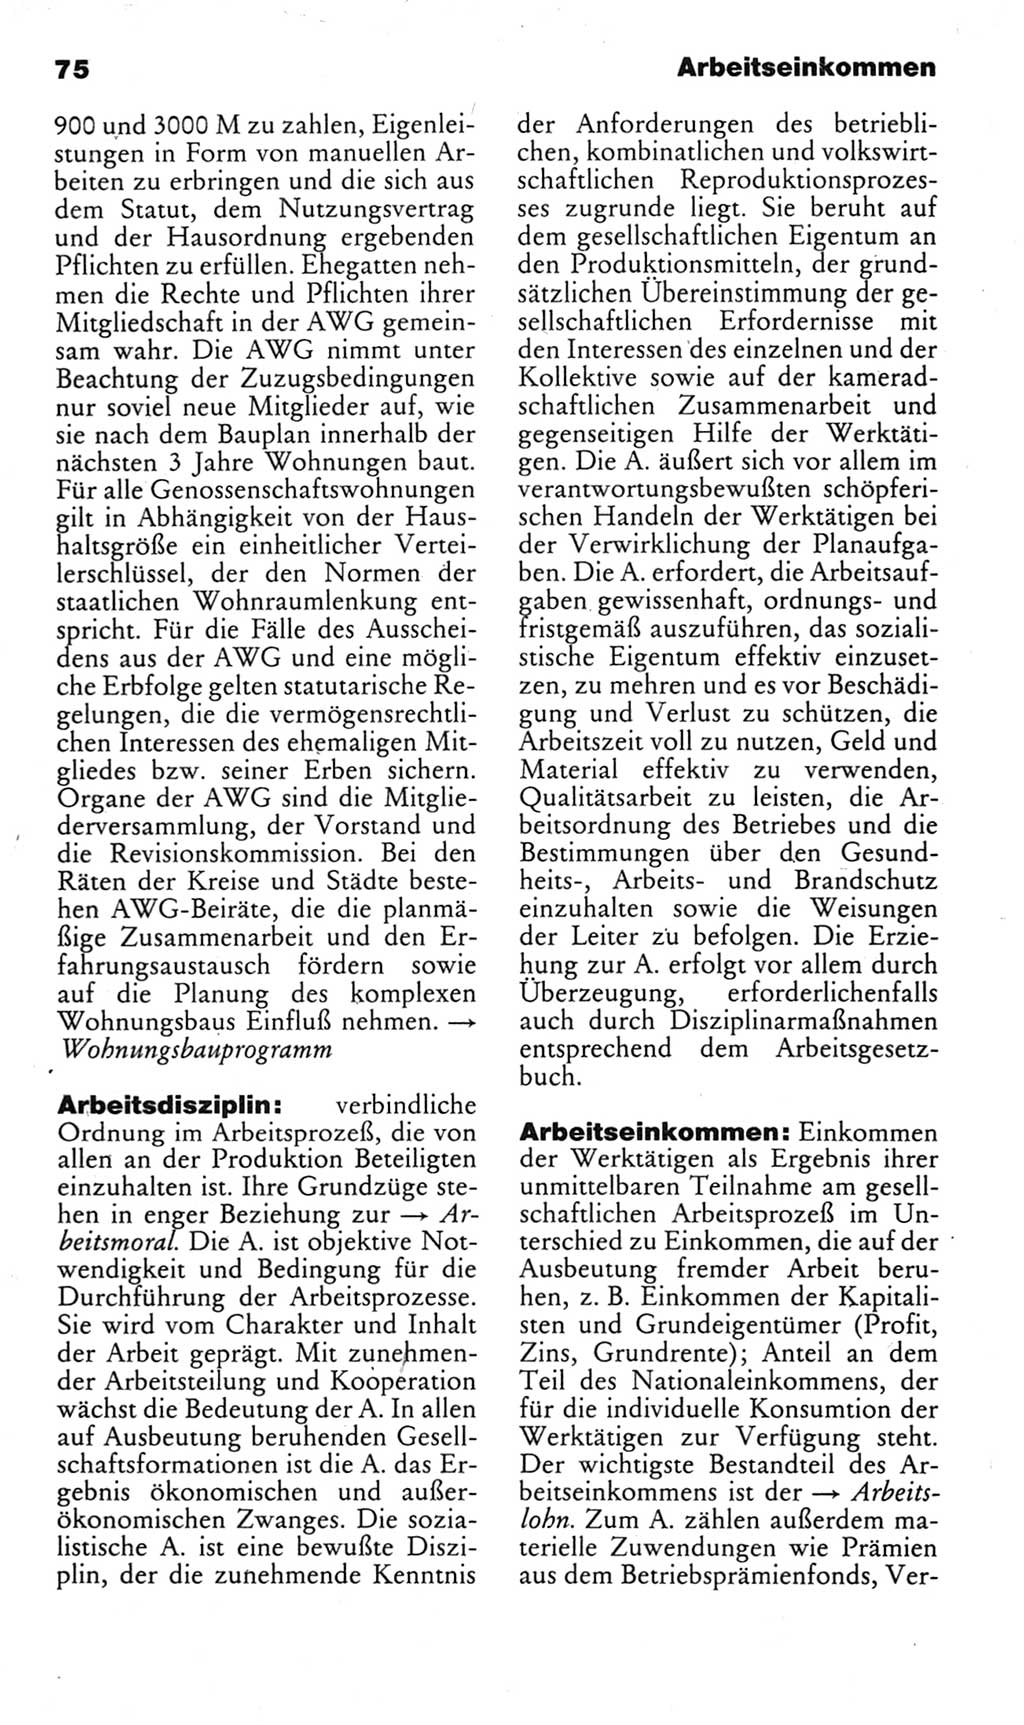 Kleines politisches Wörterbuch [Deutsche Demokratische Republik (DDR)] 1985, Seite 75 (Kl. pol. Wb. DDR 1985, S. 75)